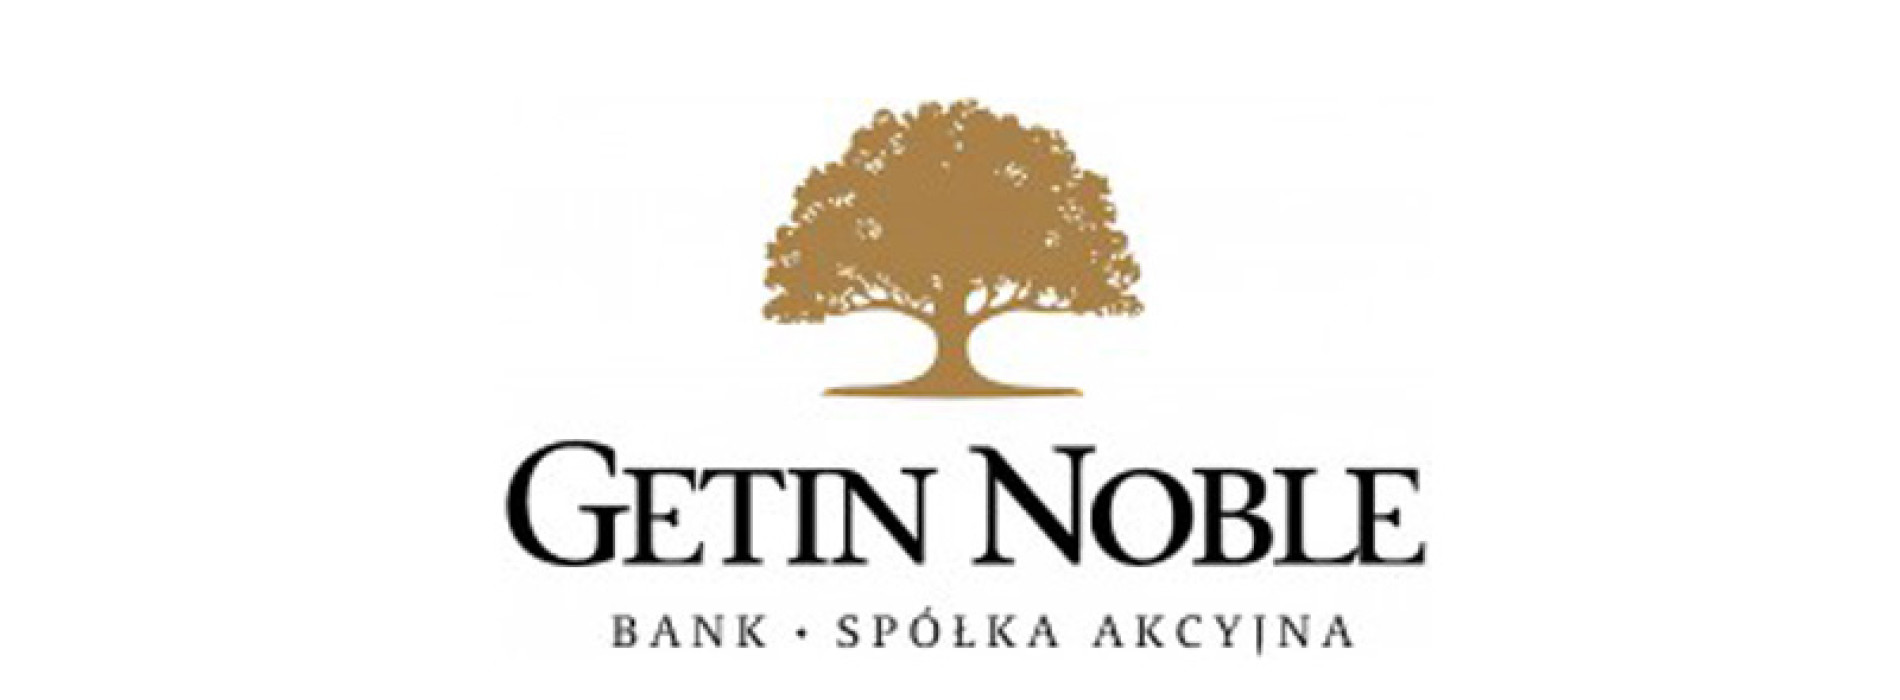 Getin Noble Bank emituje obligacje skierowane do inwestorów instytucjonalnych